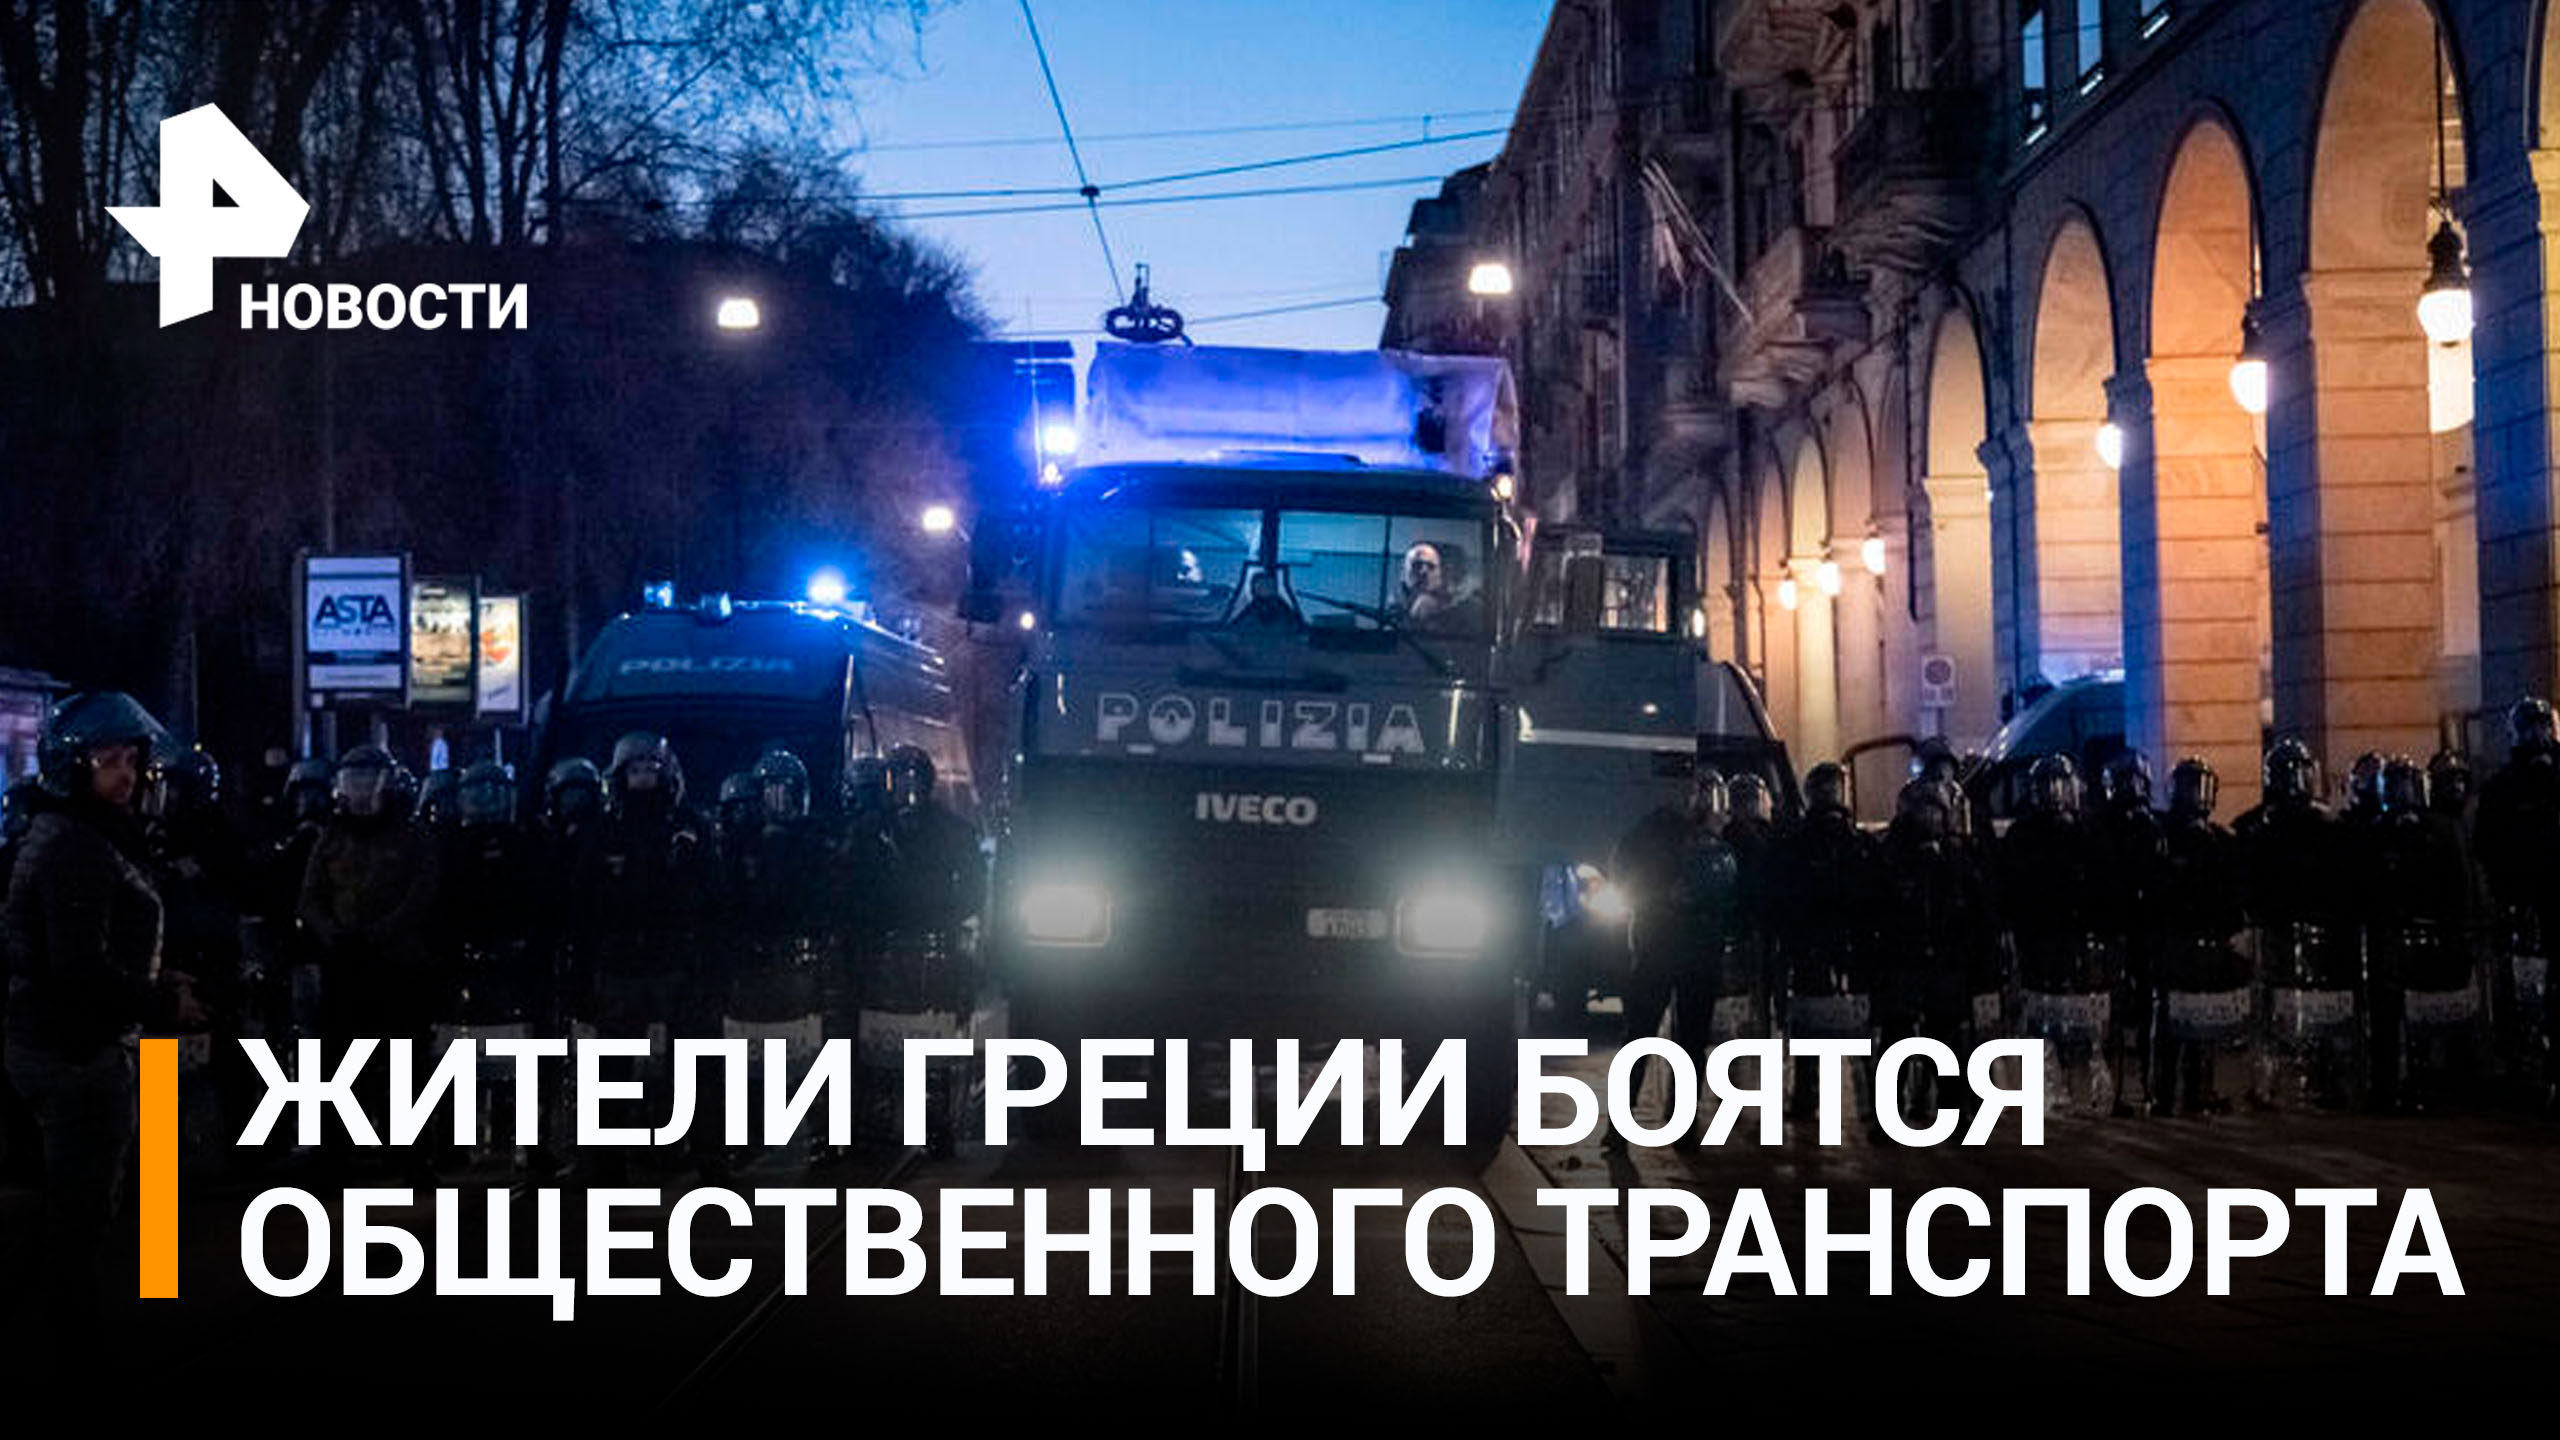 Массовые беспорядки вспыхнули в Греции после аварии с поездами / РЕН Новости